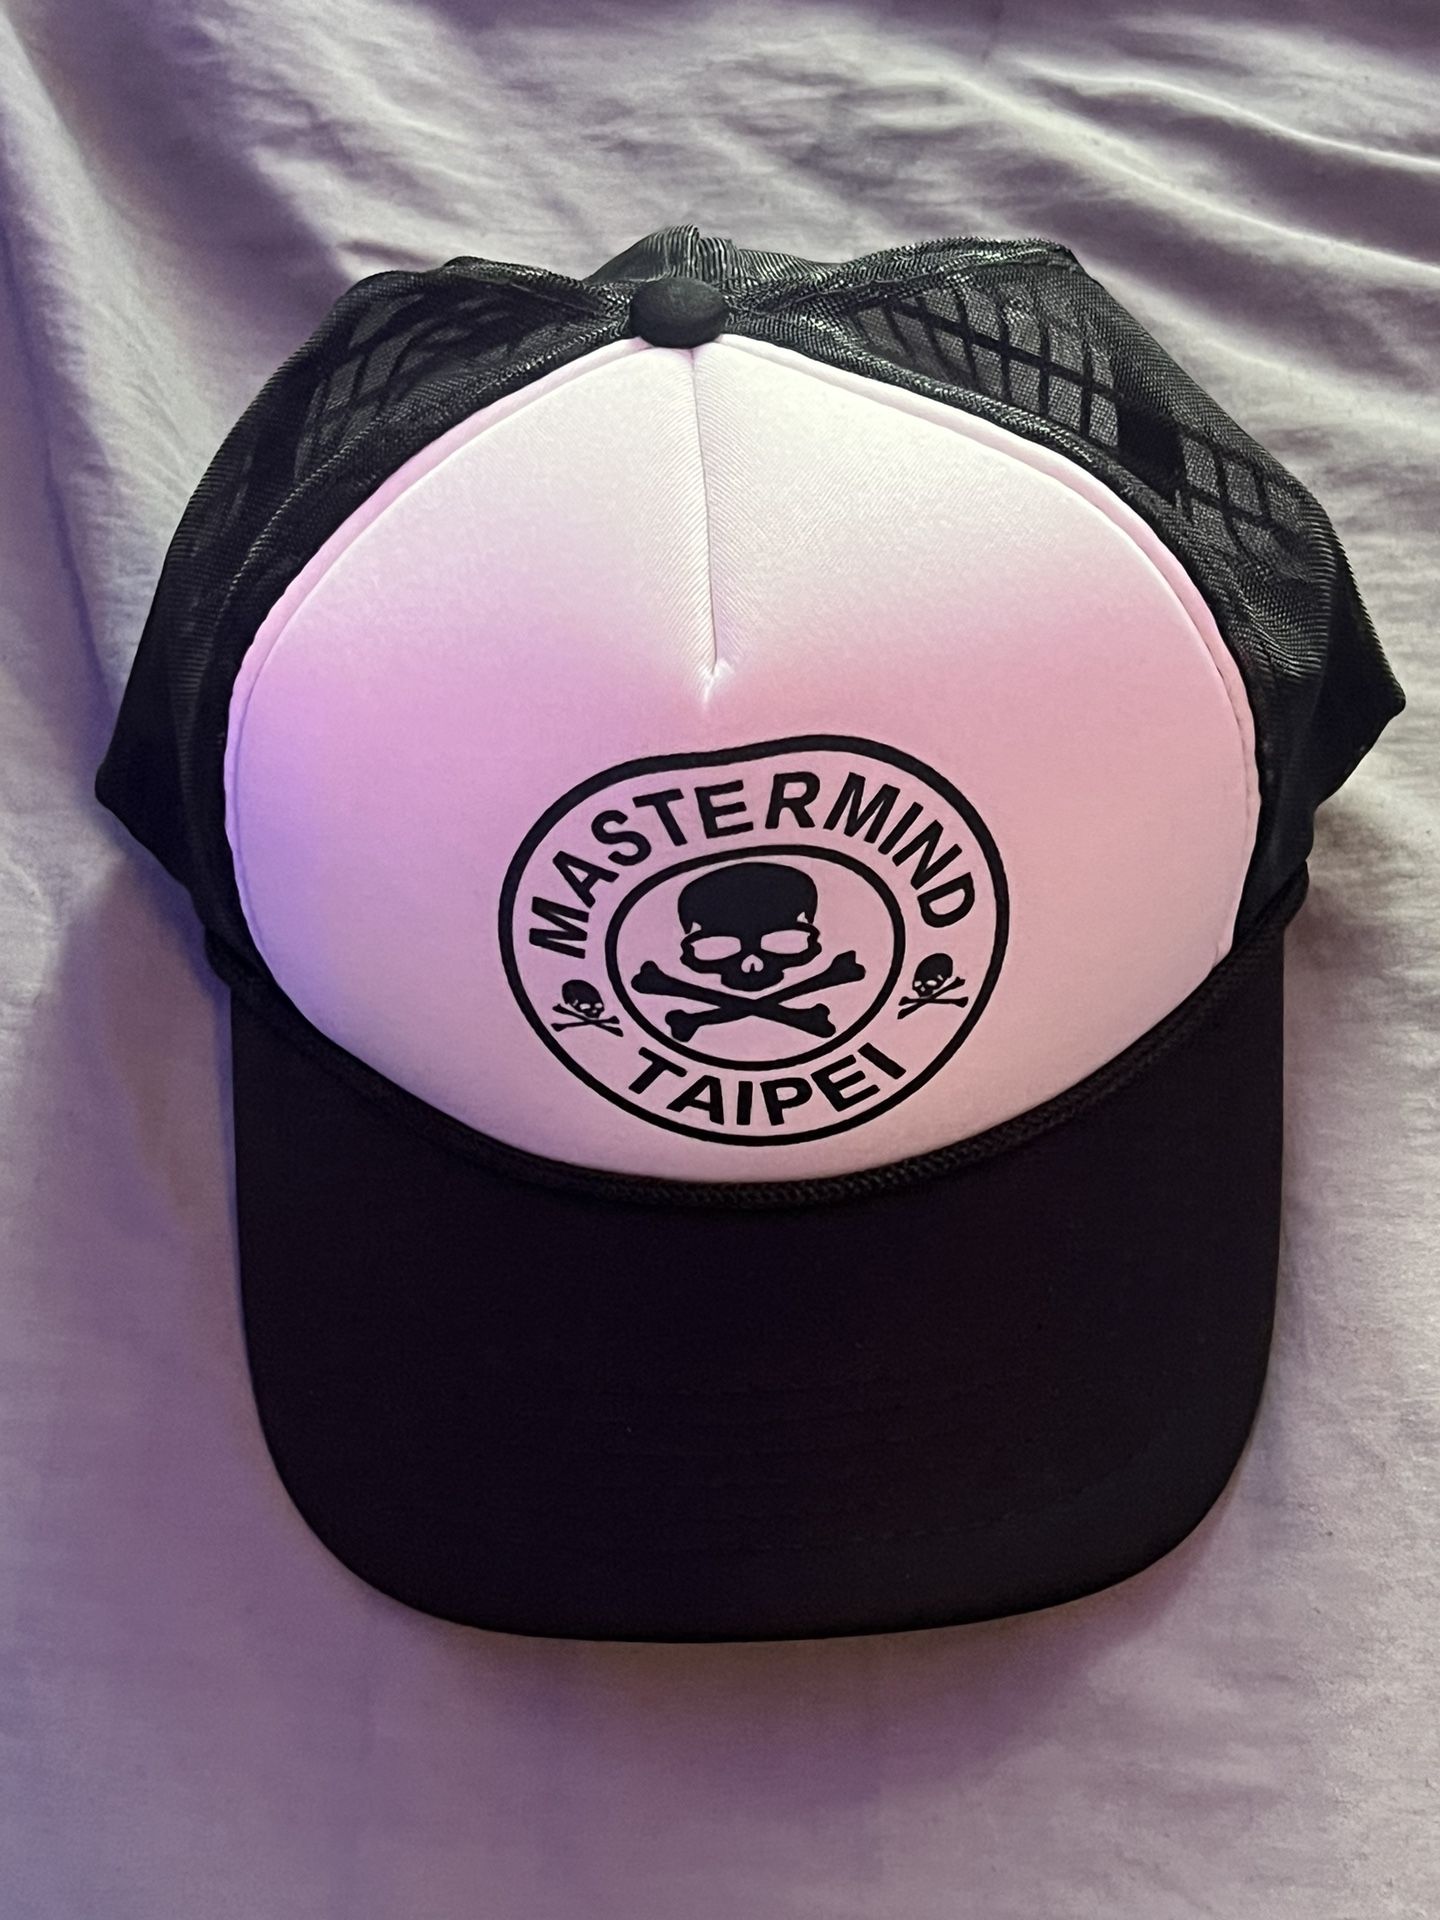 Trucker Hat: Master Mind